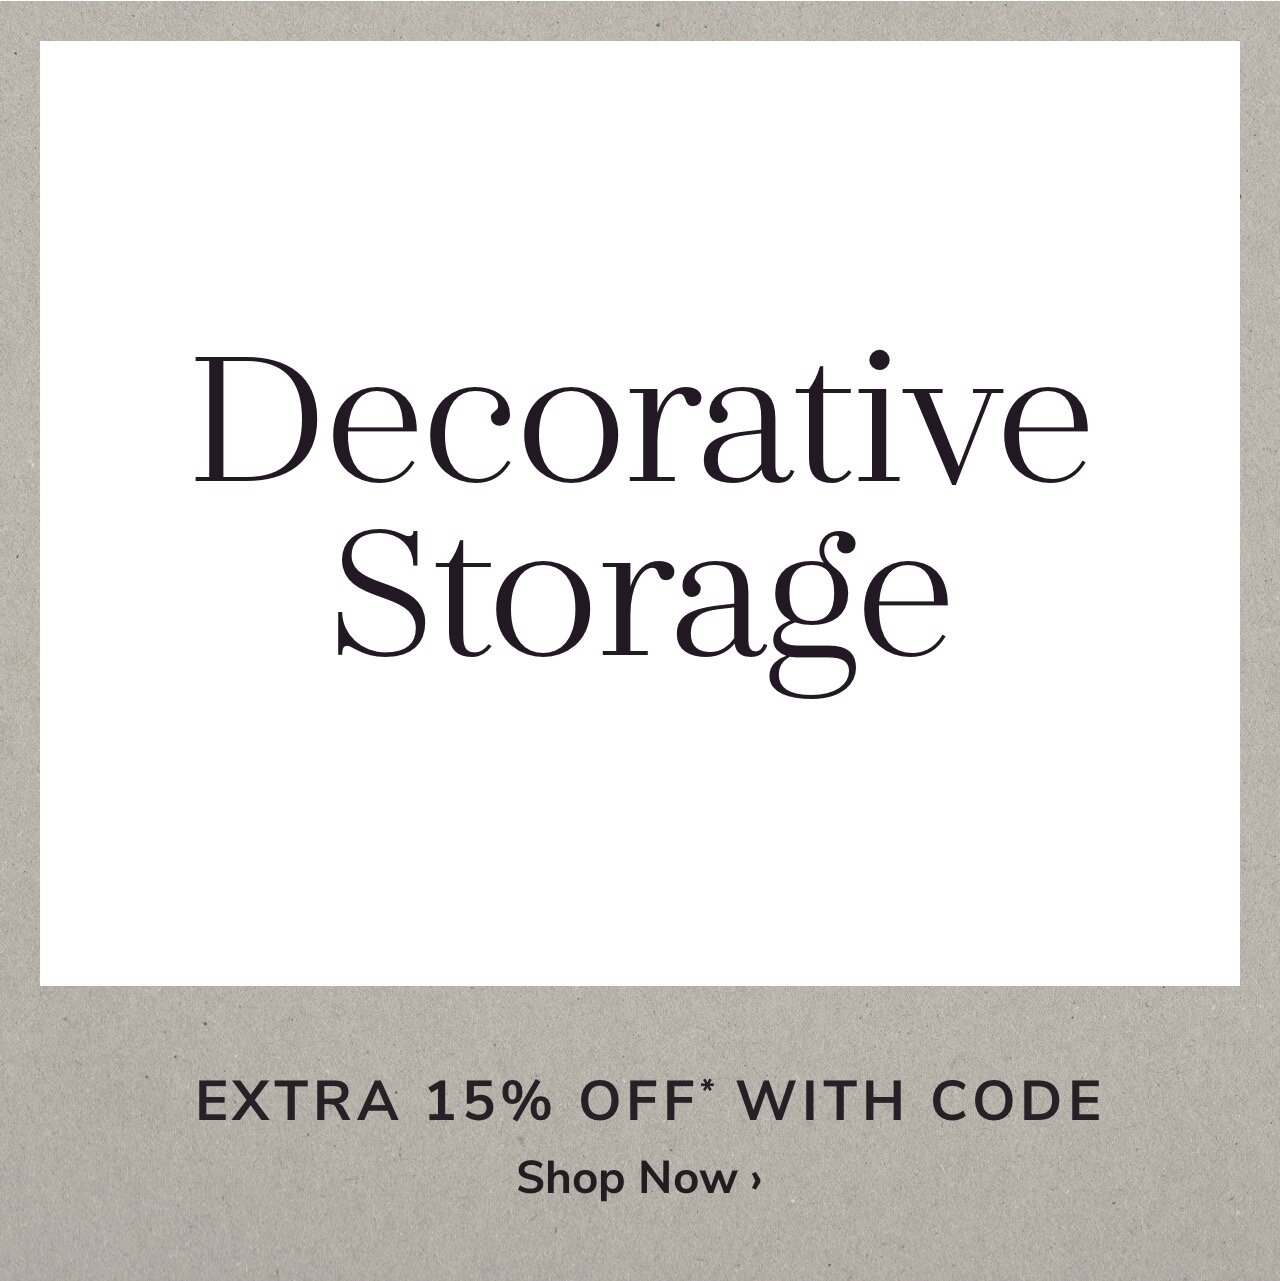 Decorative Storage Sale